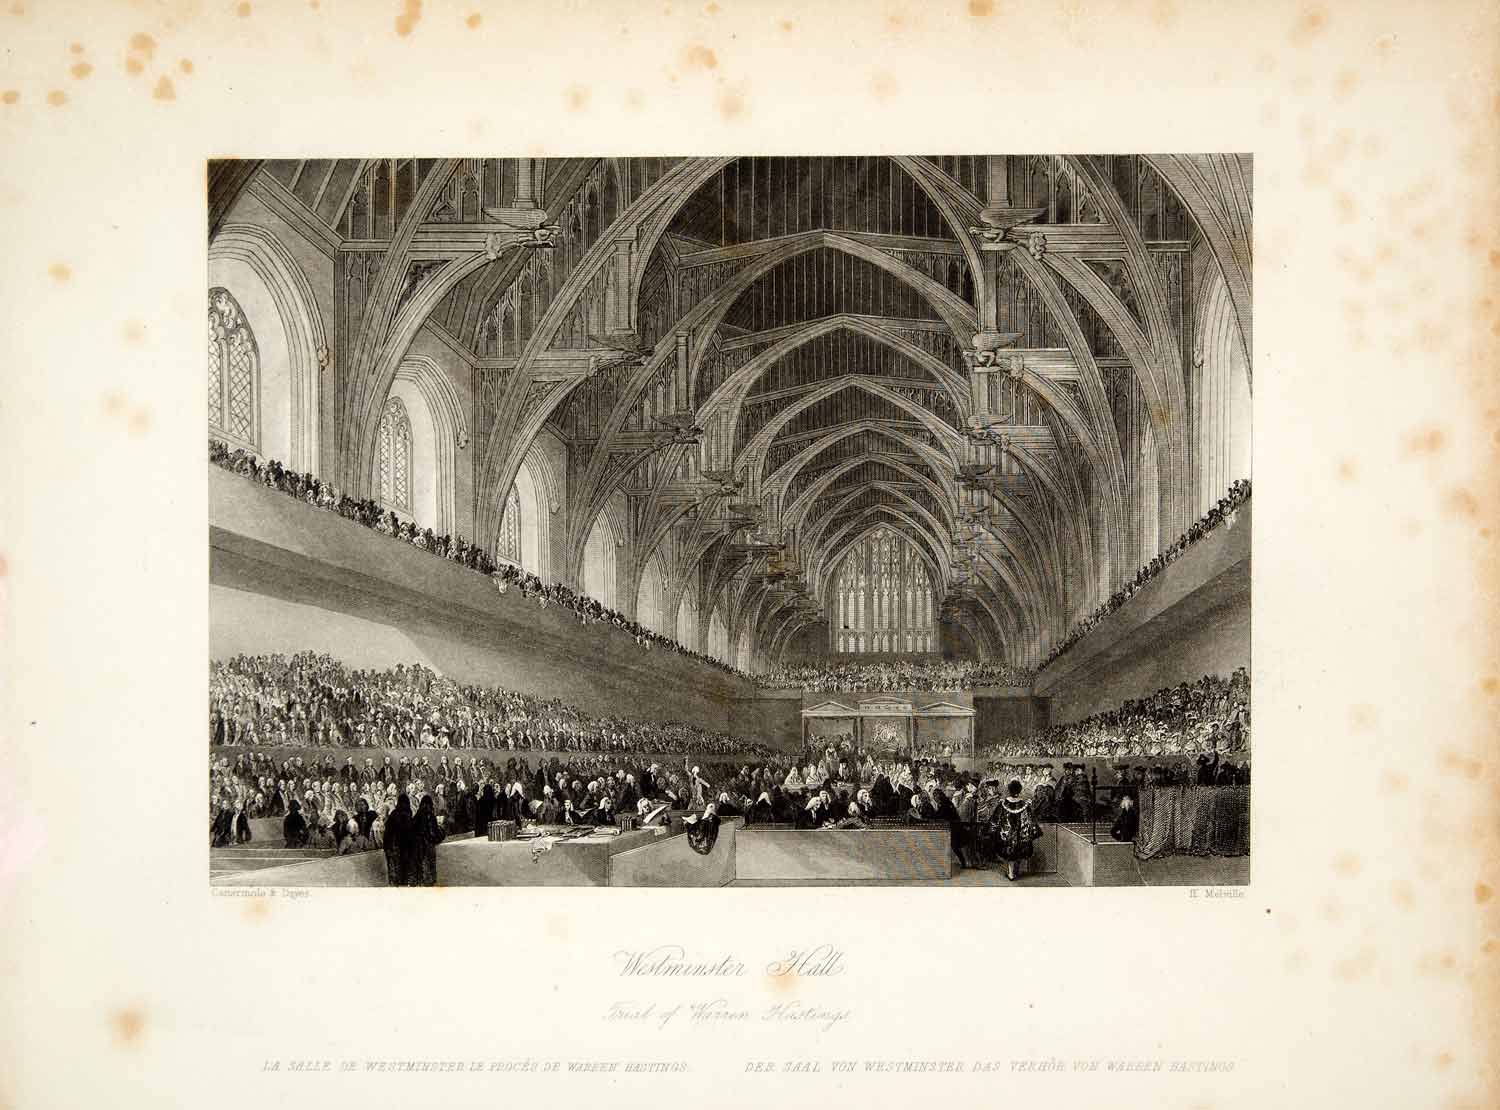 1845 Steel Engraving George Cattermole Westminster Hall Warren Hastings XGHD9